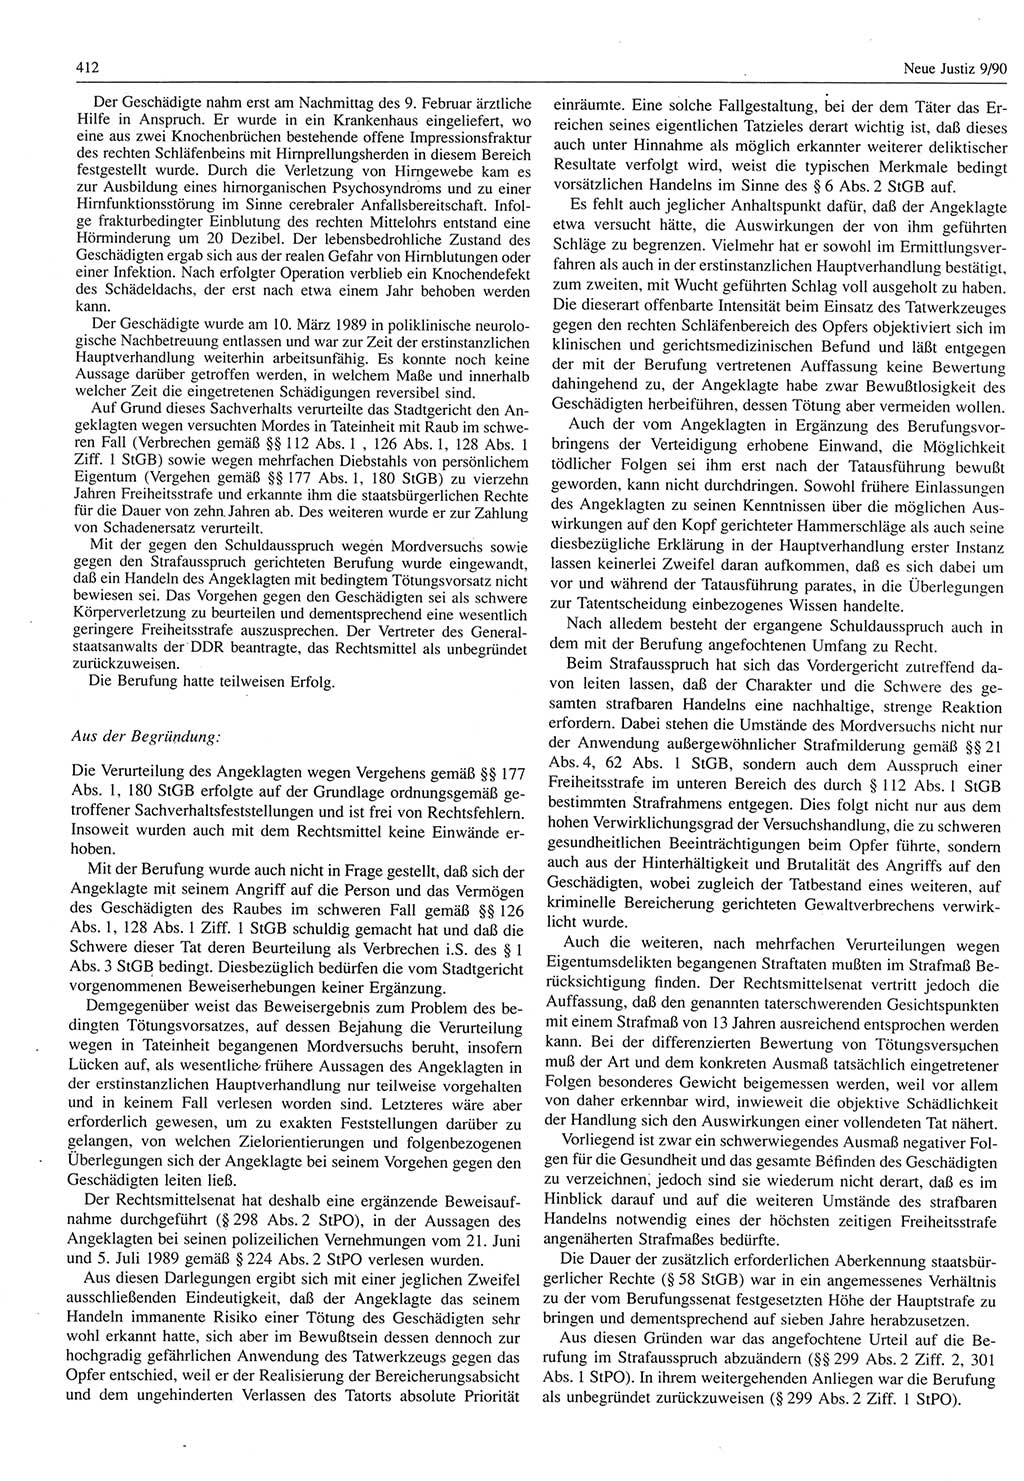 Neue Justiz (NJ), Zeitschrift für Rechtsetzung und Rechtsanwendung [Deutsche Demokratische Republik (DDR)], 44. Jahrgang 1990, Seite 412 (NJ DDR 1990, S. 412)